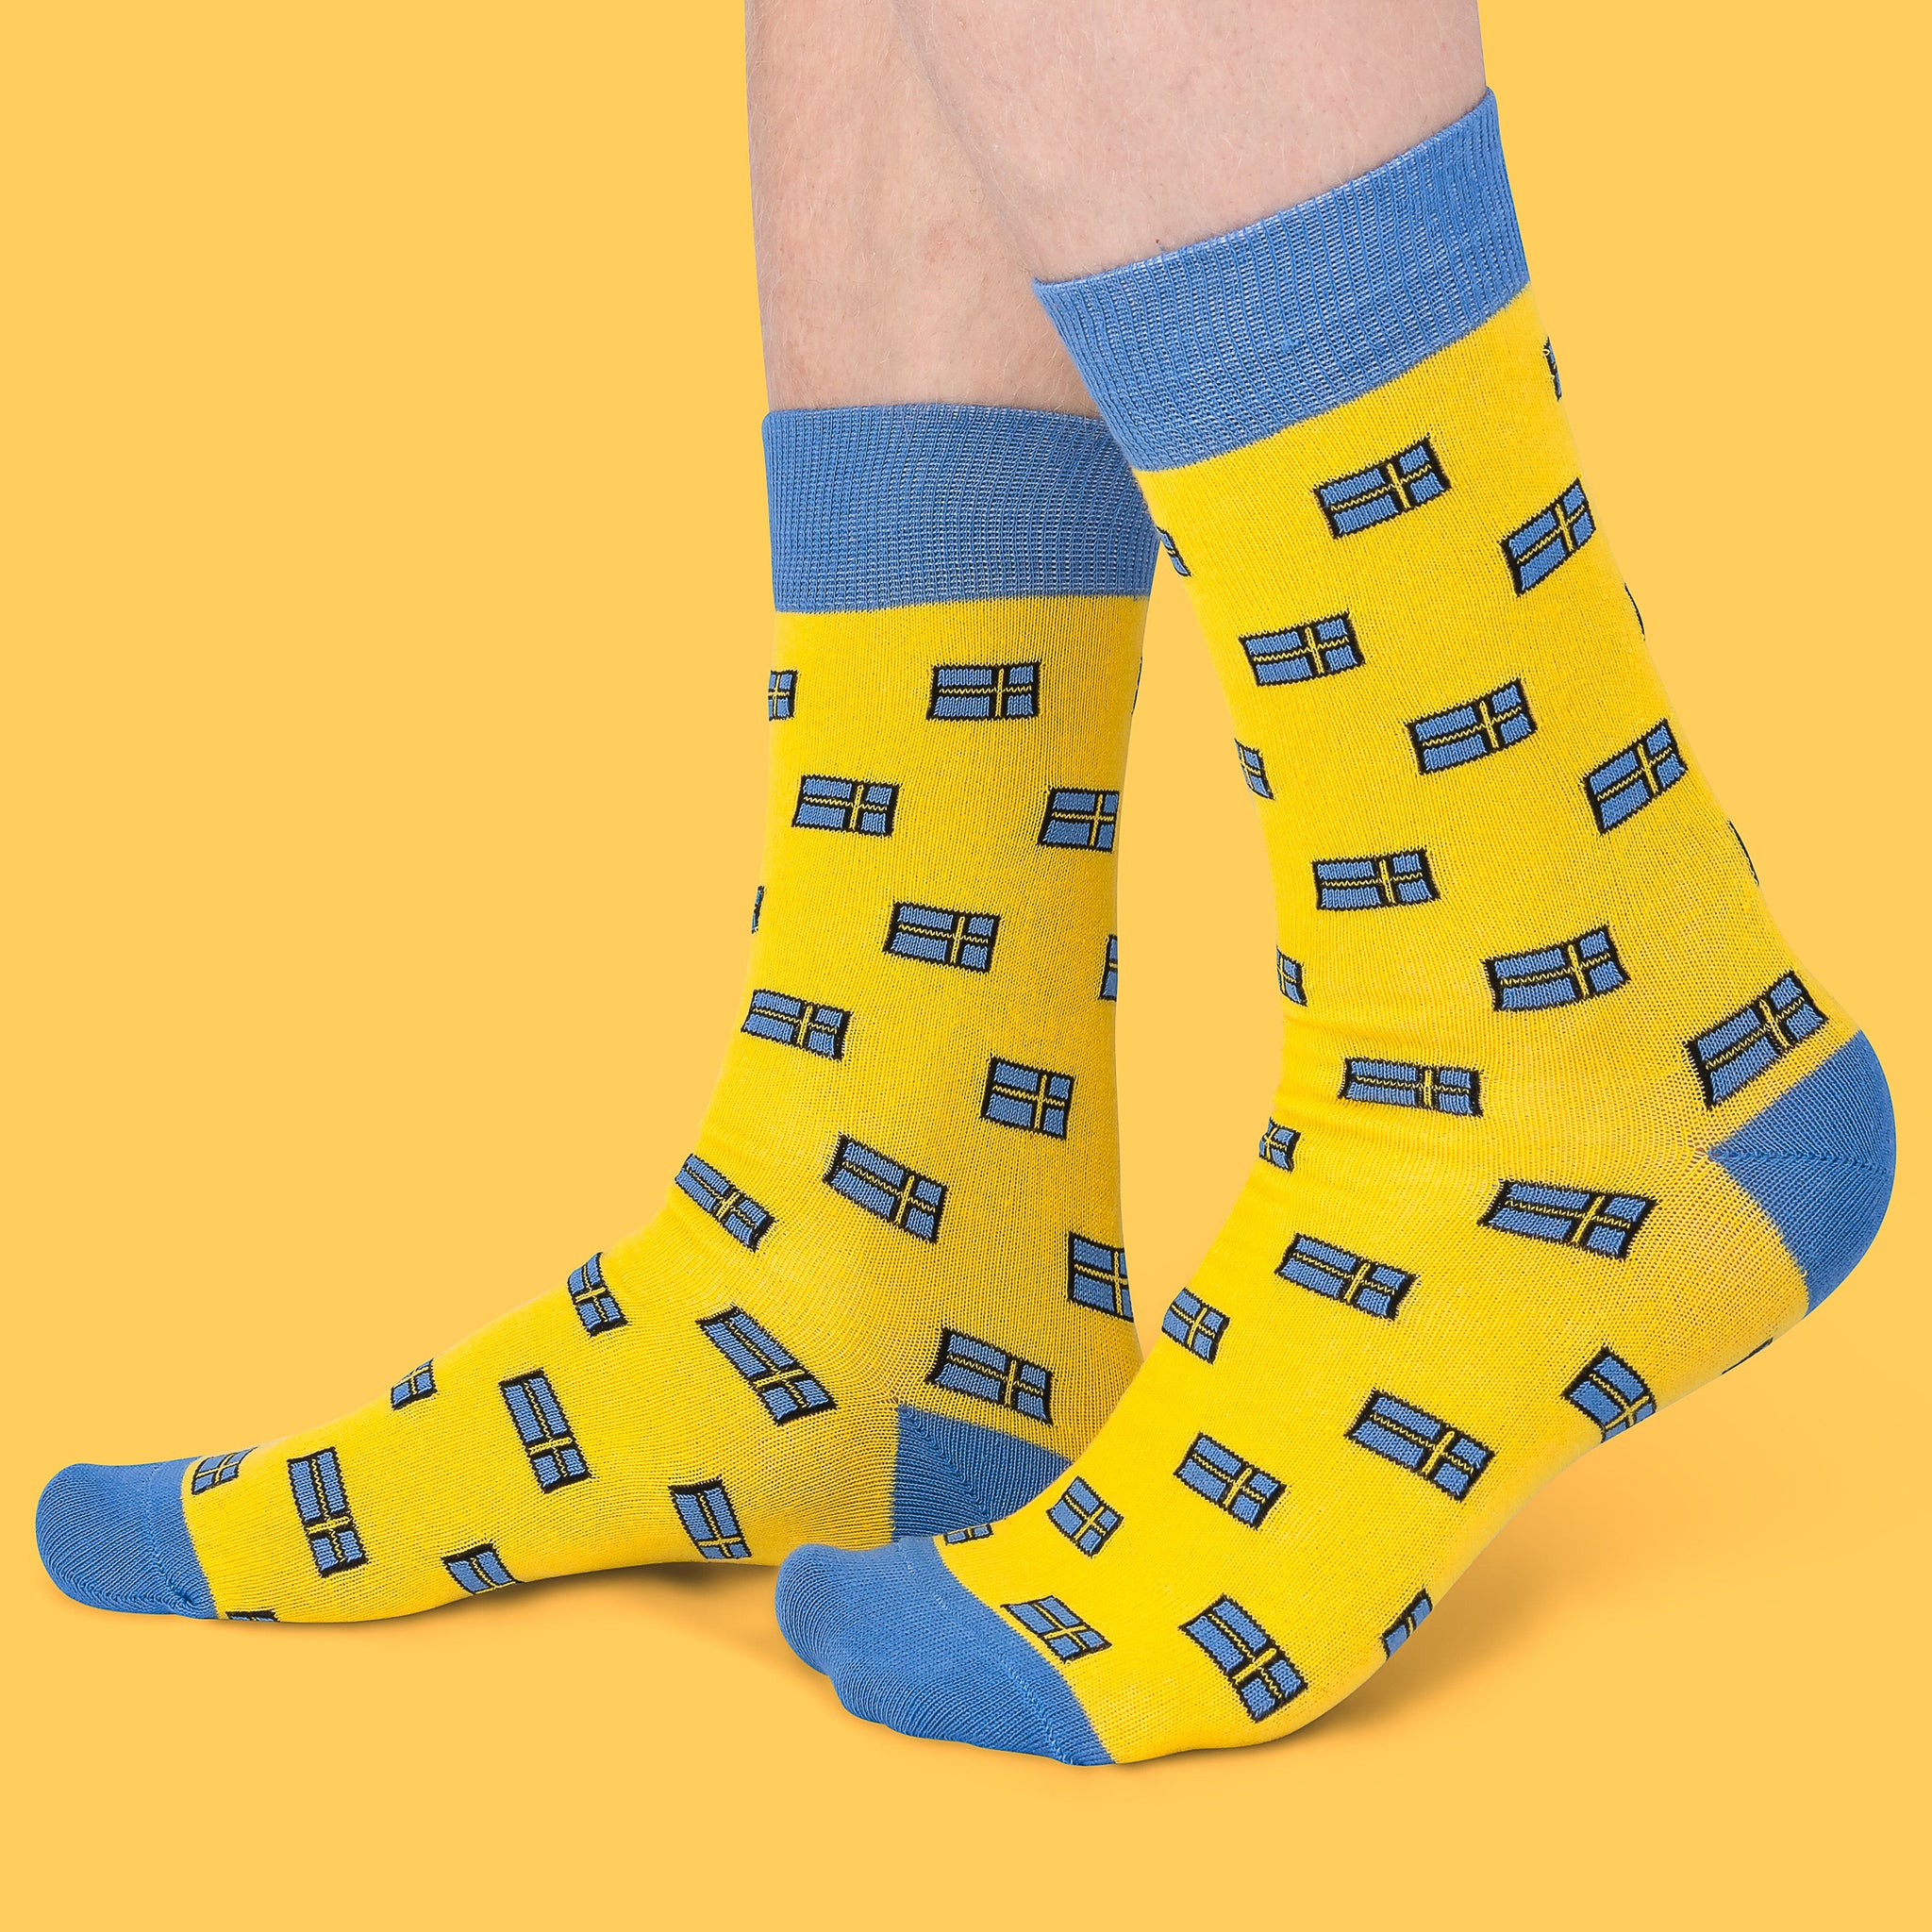 Sweden Socks - Swedish flag